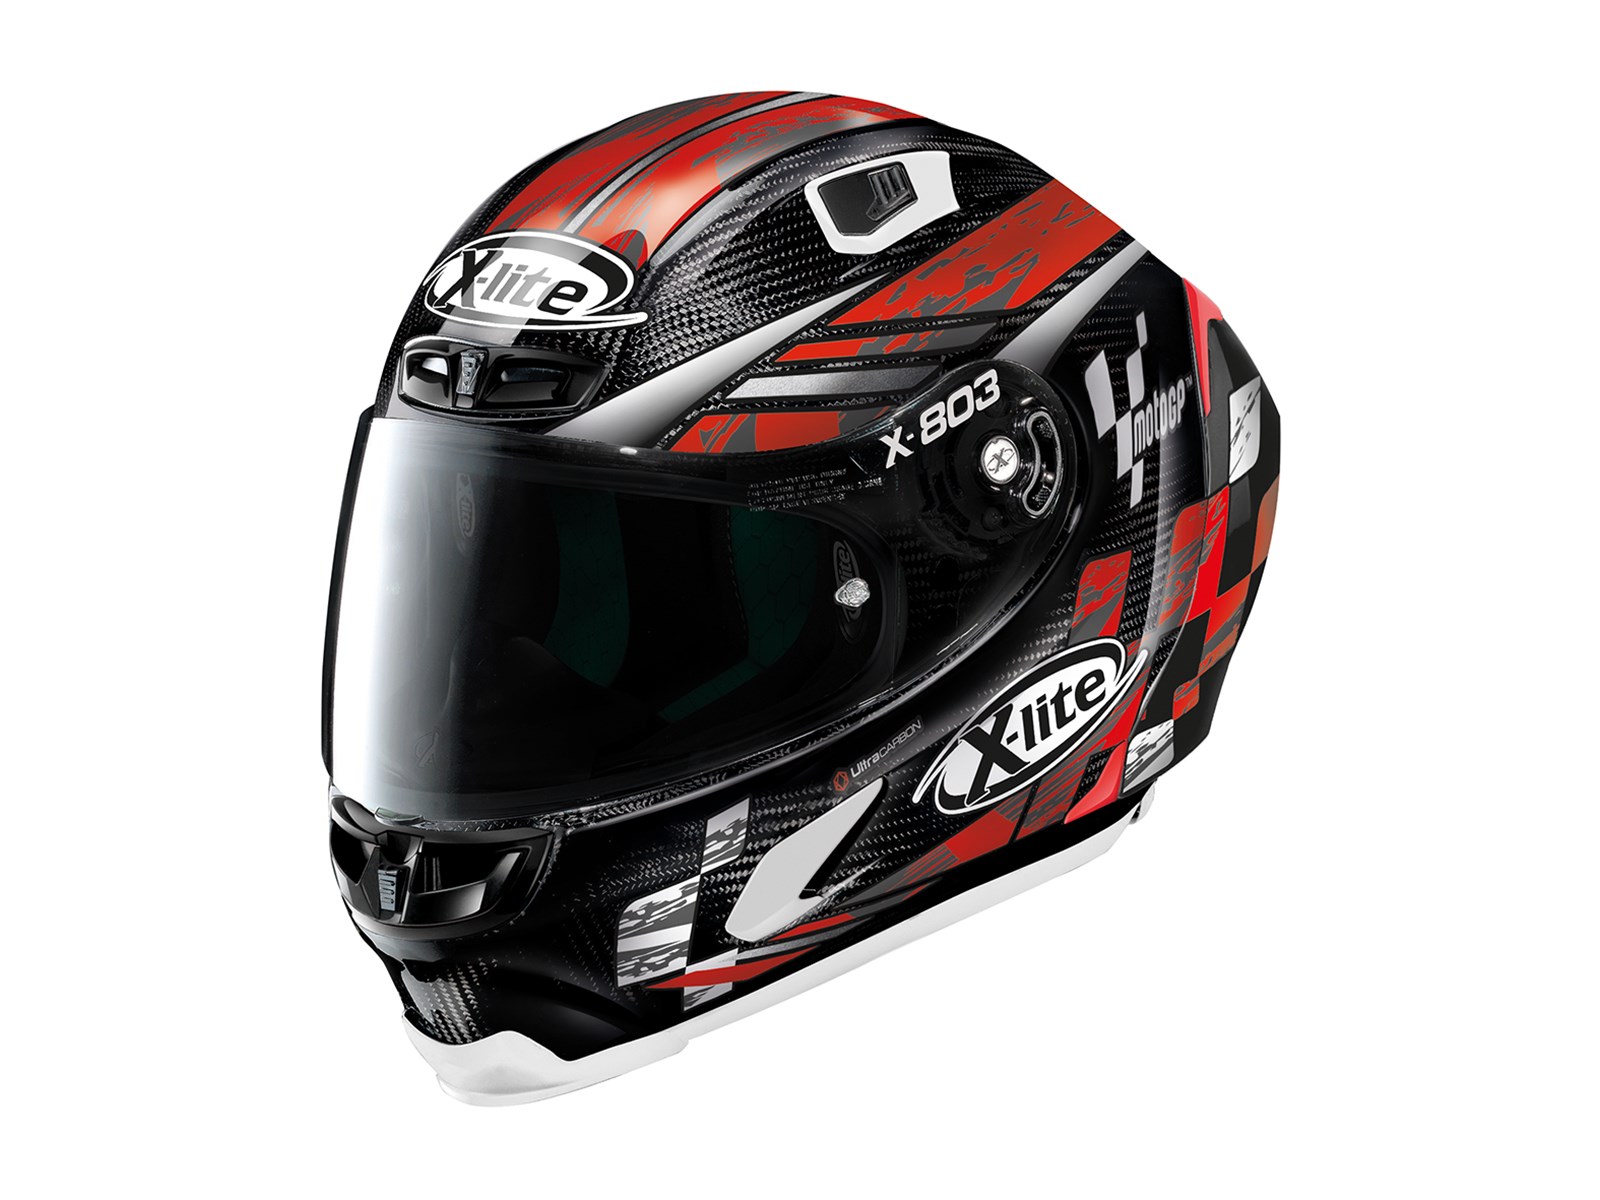 Kaciga X803 RS U.C. MotoGP No.67 L